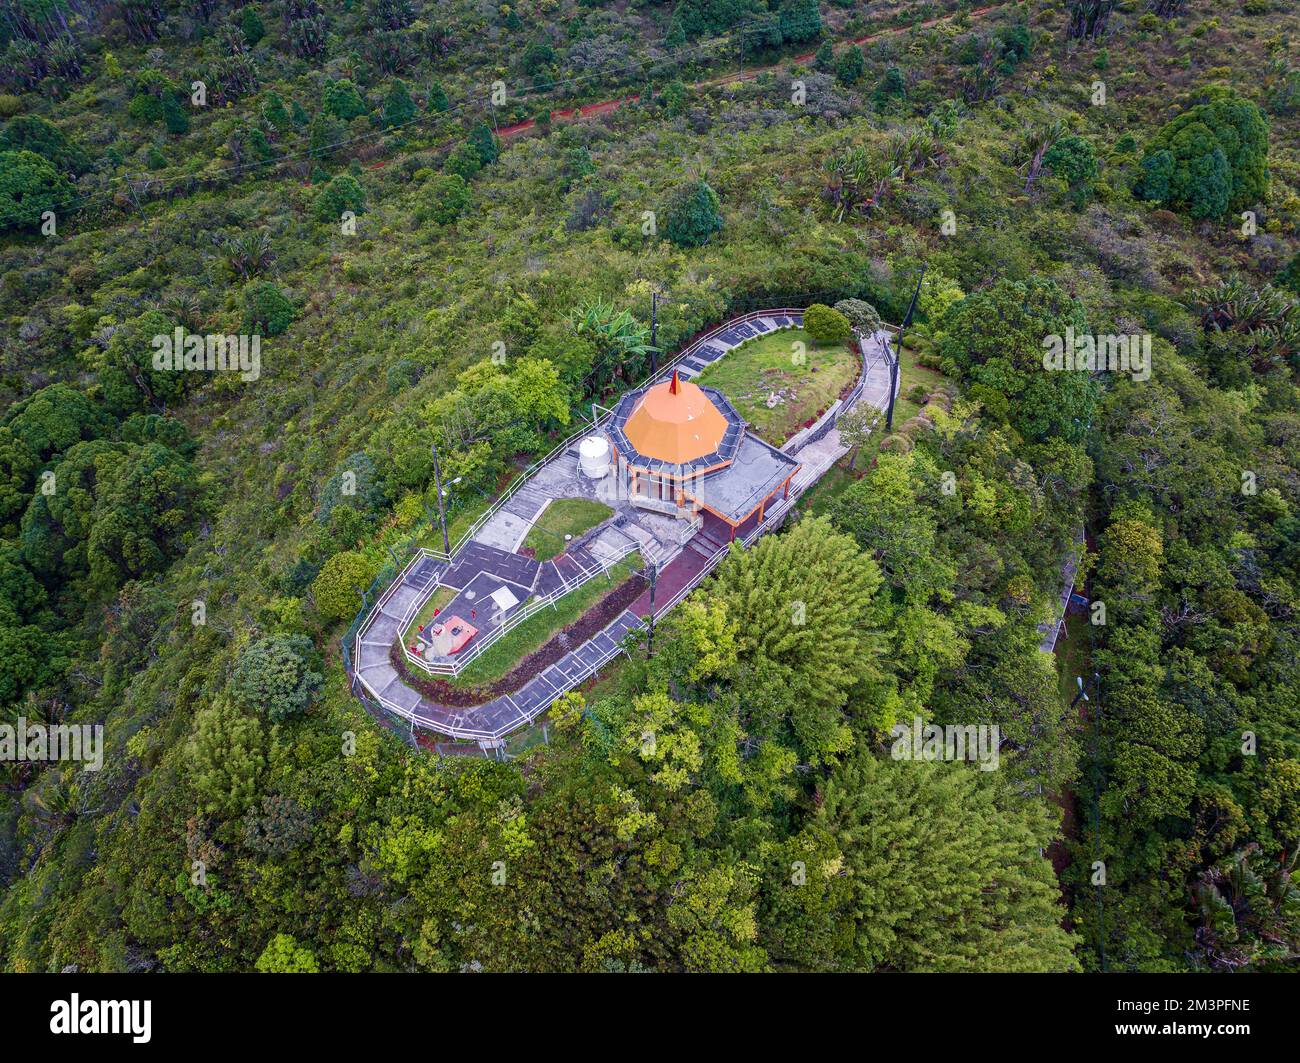 Grand Botschafin ist ein vergänglicher Ort zum Meditieren, Beten und Entspannen. Berühmtes touristisches Reiseziel auf Mauritius. Mehr versteckte Götterstatue in diesem p Stockfoto